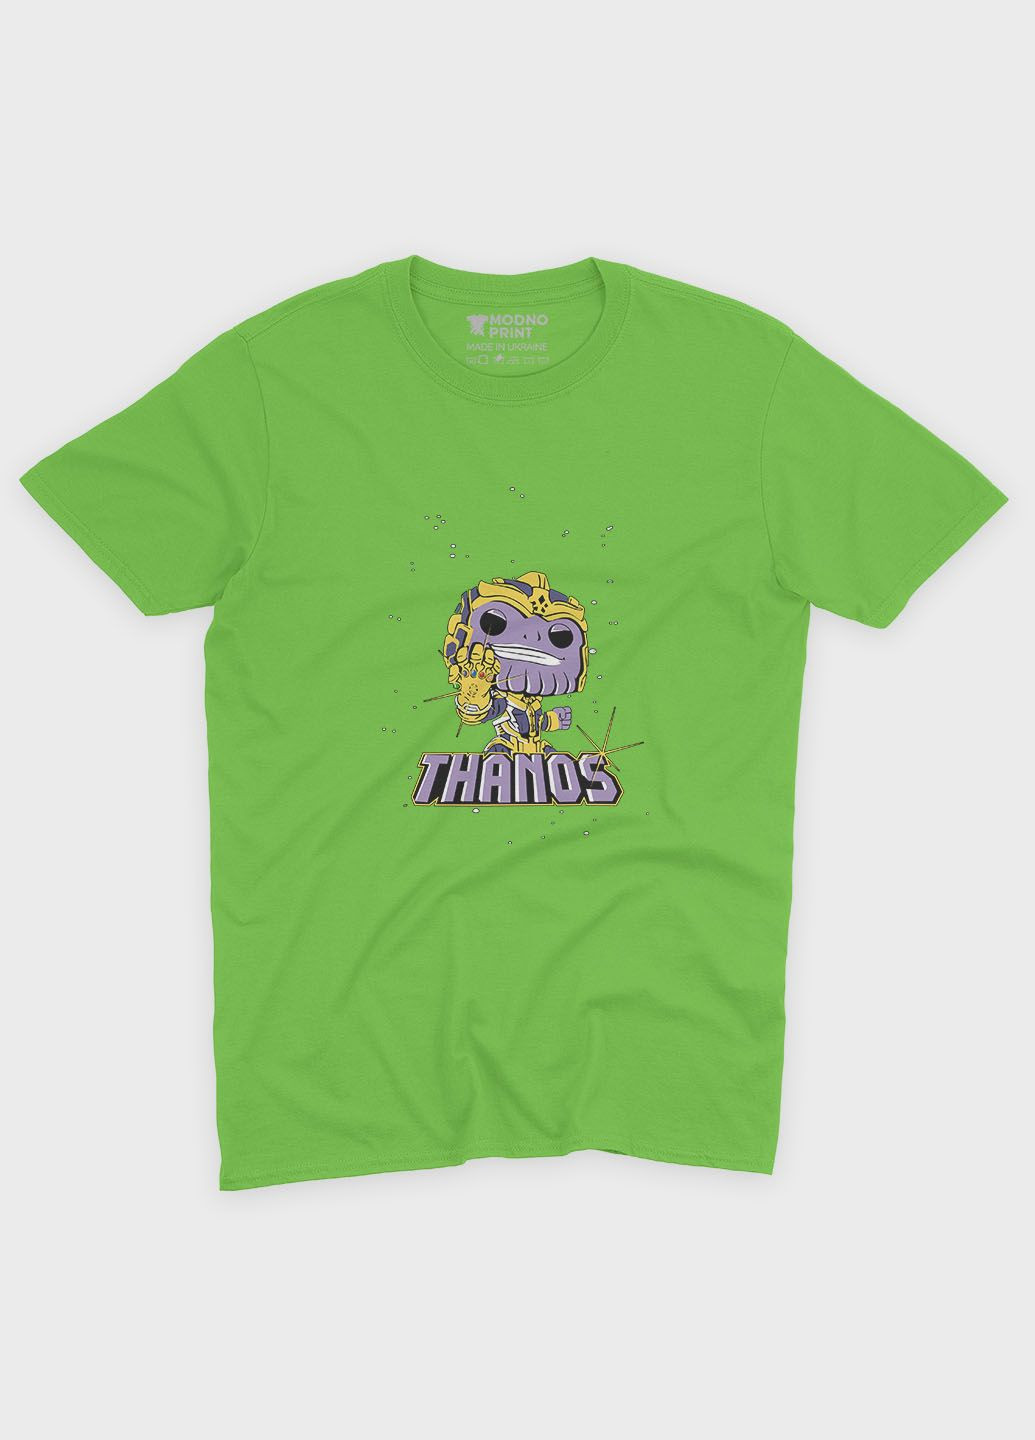 Салатова демісезонна футболка для хлопчика з принтом супезлодія - танос (ts001-1-kiw-006-019-007-b) Modno